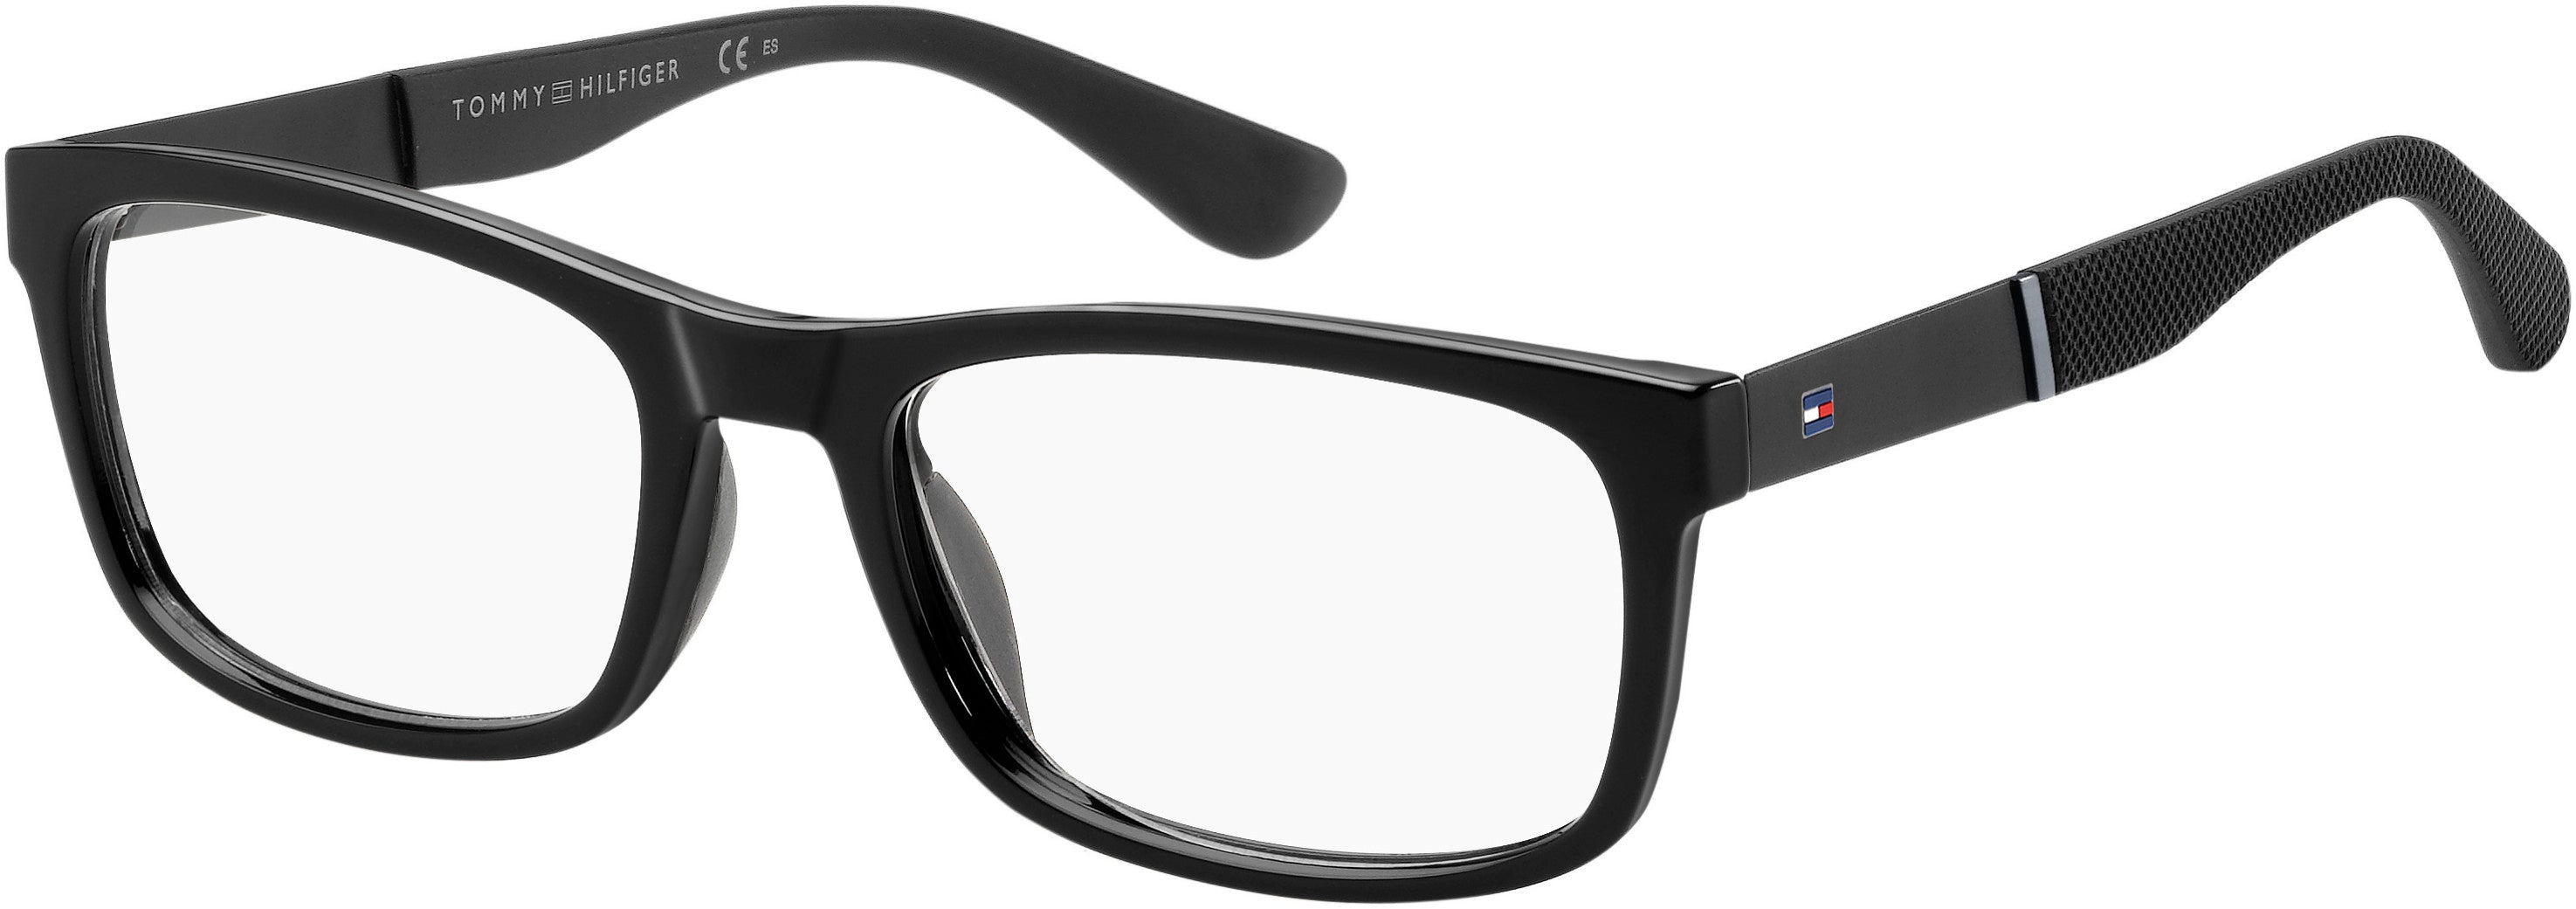 Tommy Hilfiger T. Hilfiger 1522 Rectangular Eyeglasses 0807-0807  Black (00 Demo Lens)